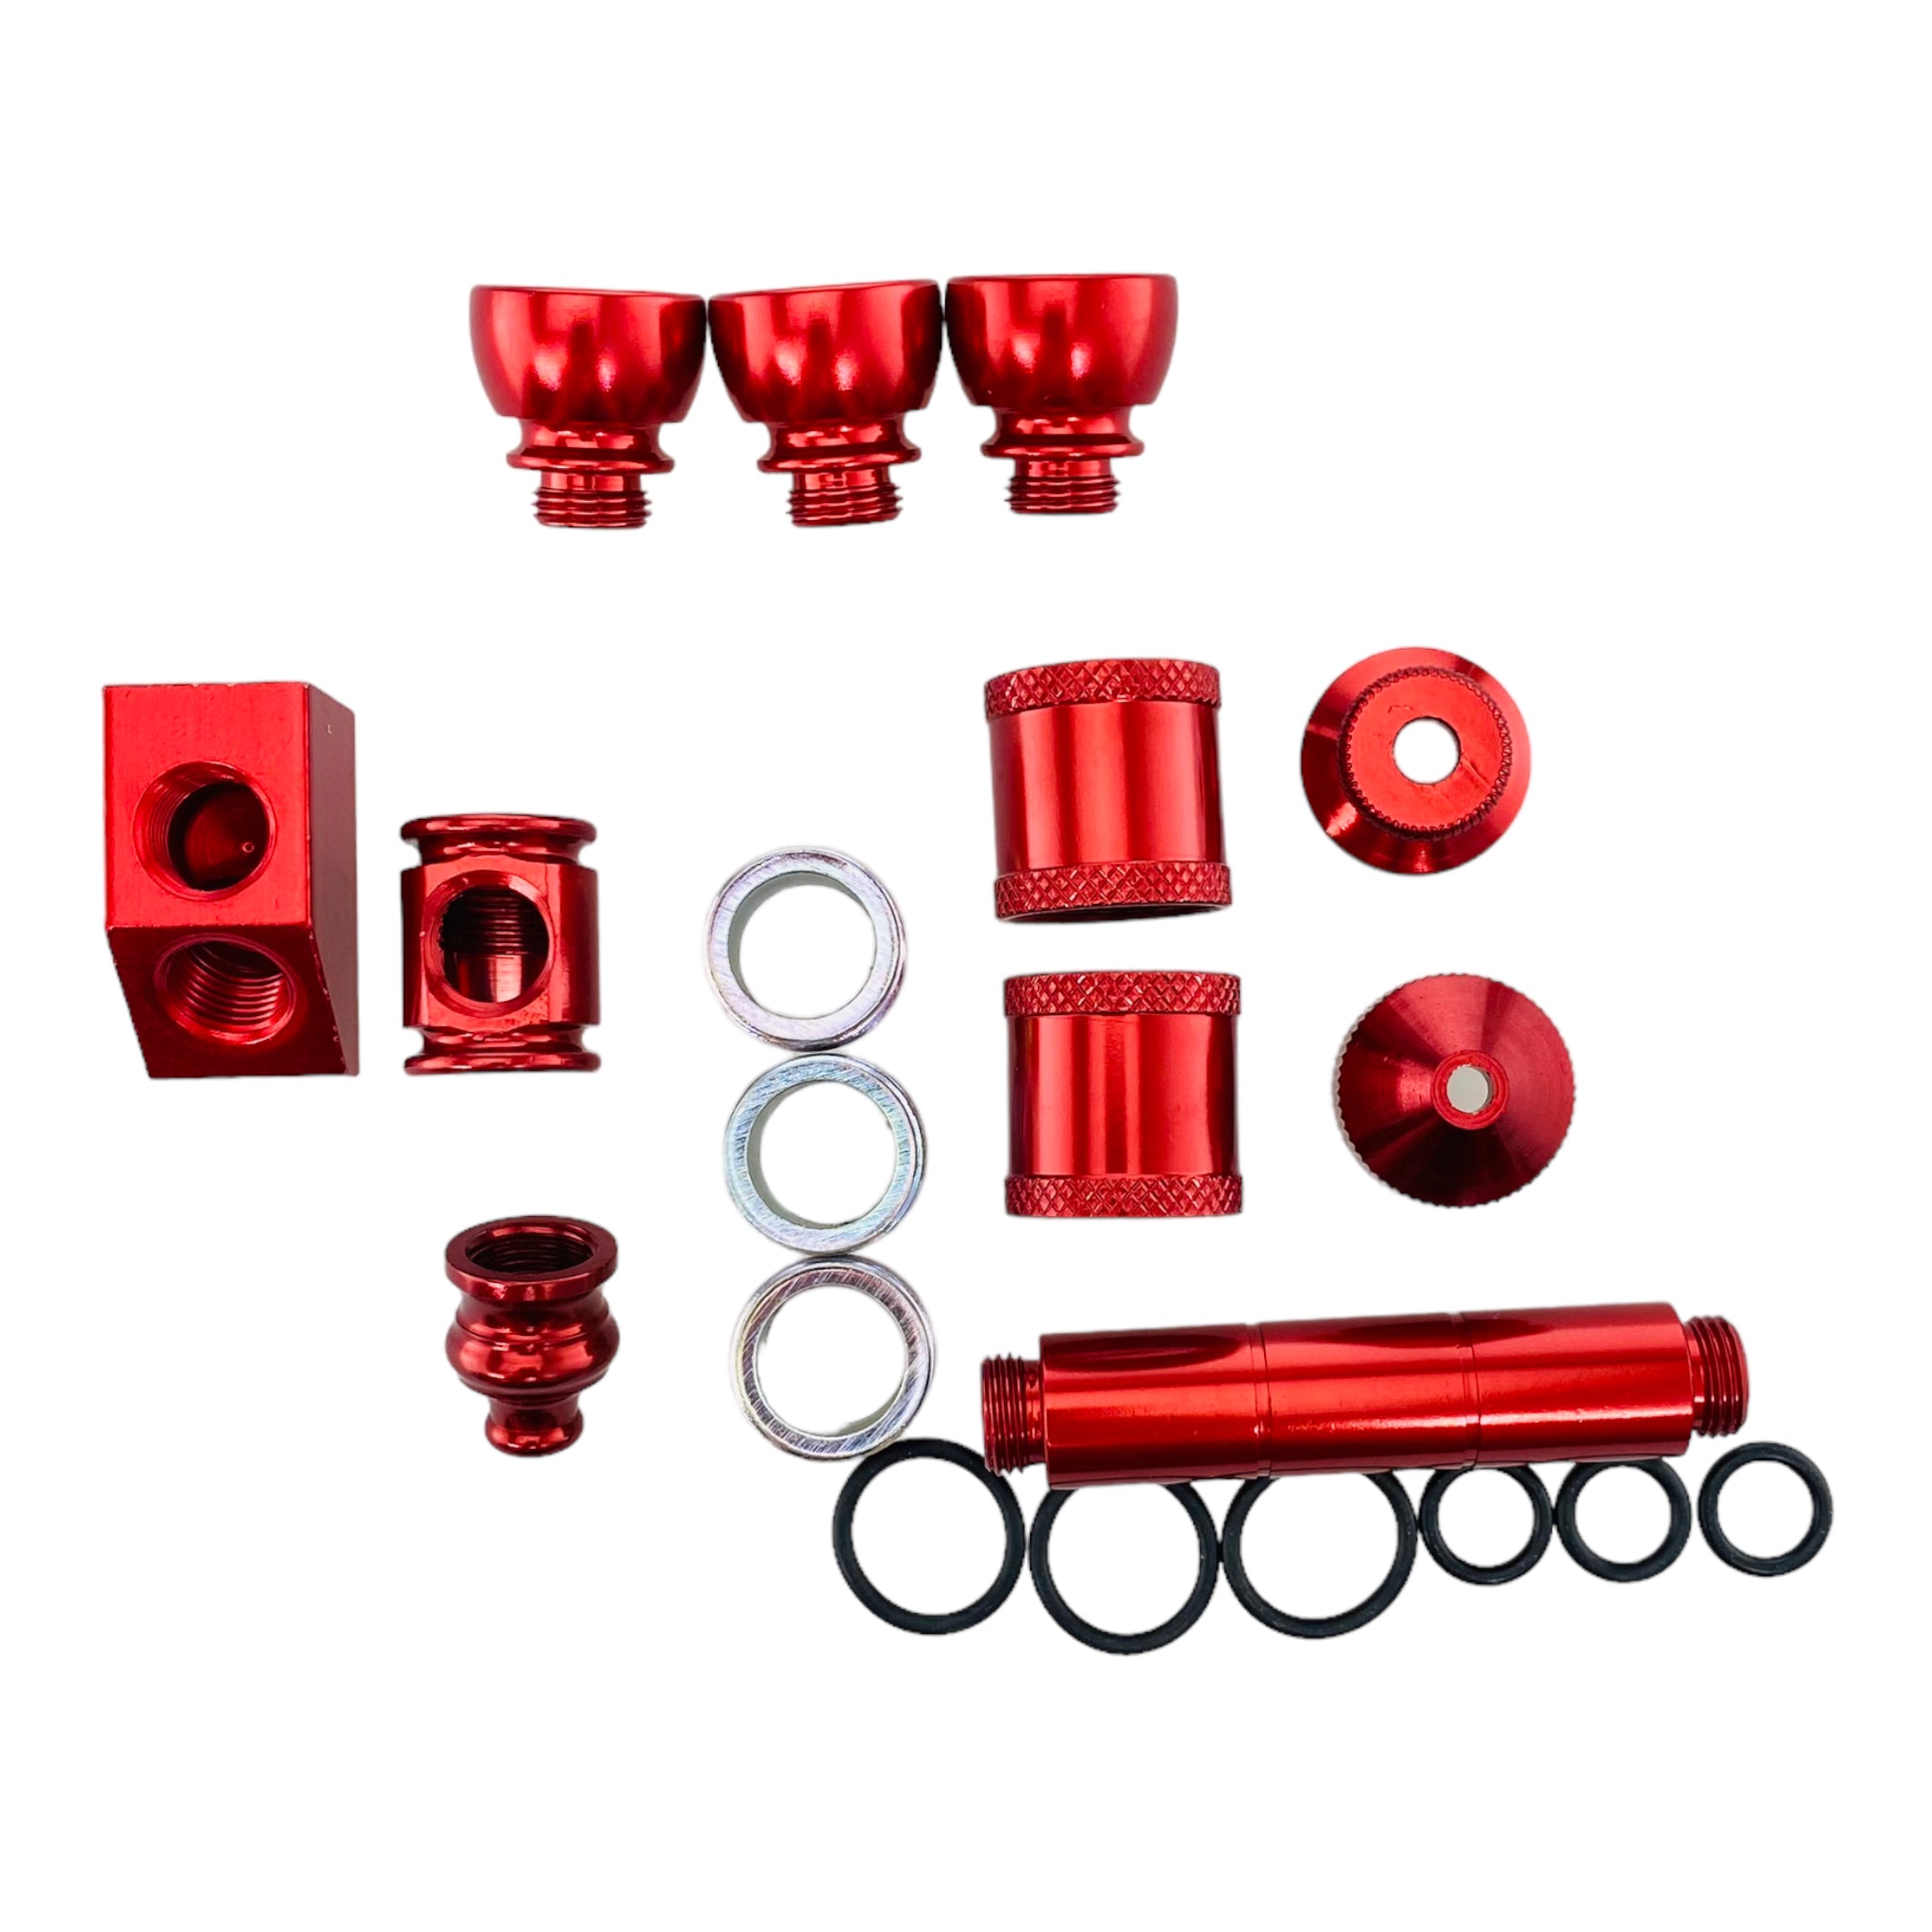 Aluminum Metal Pipe Makers Kit in Red